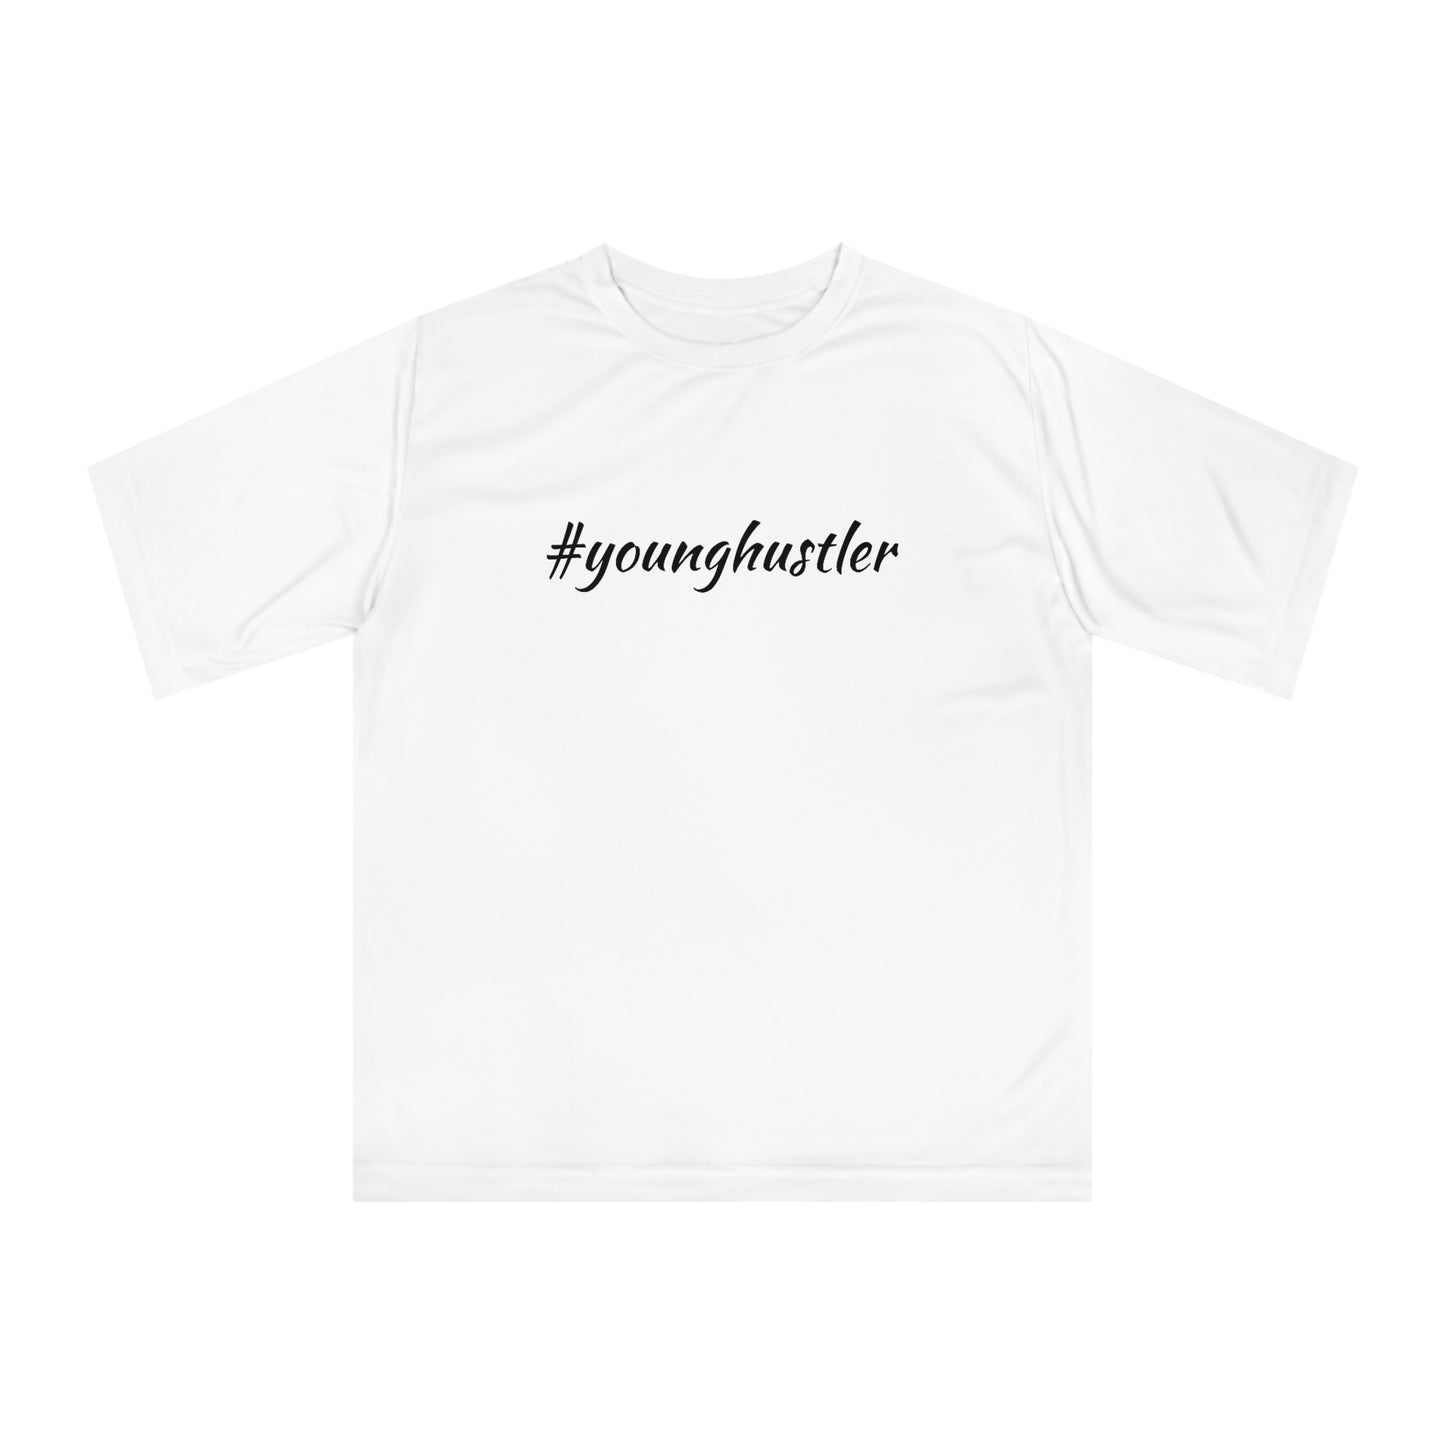 Younghustler Oversized T-shirt